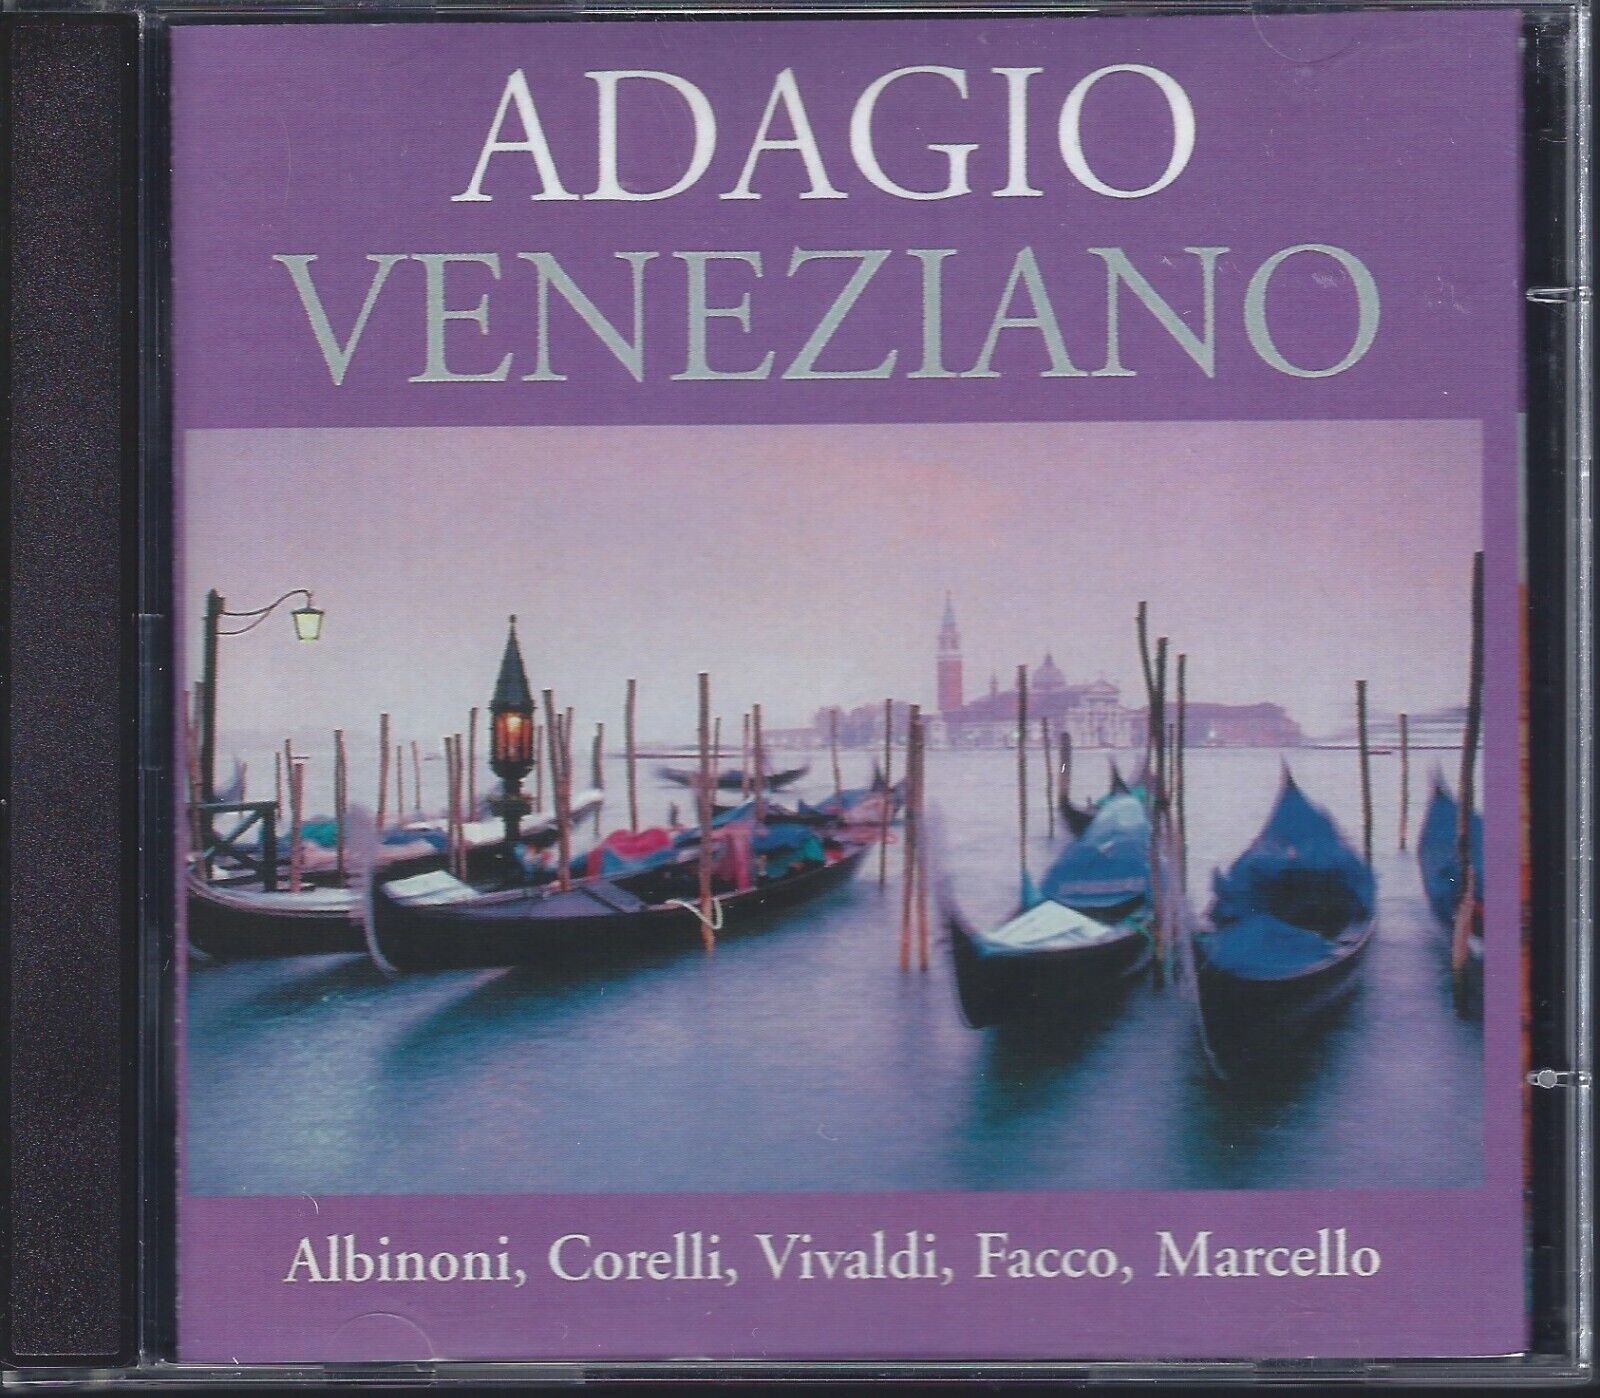 Adagio Veneziano - Albinoni, Corelli, Vivaldi, Facco, Marcello (CD, 2-Disc Set)